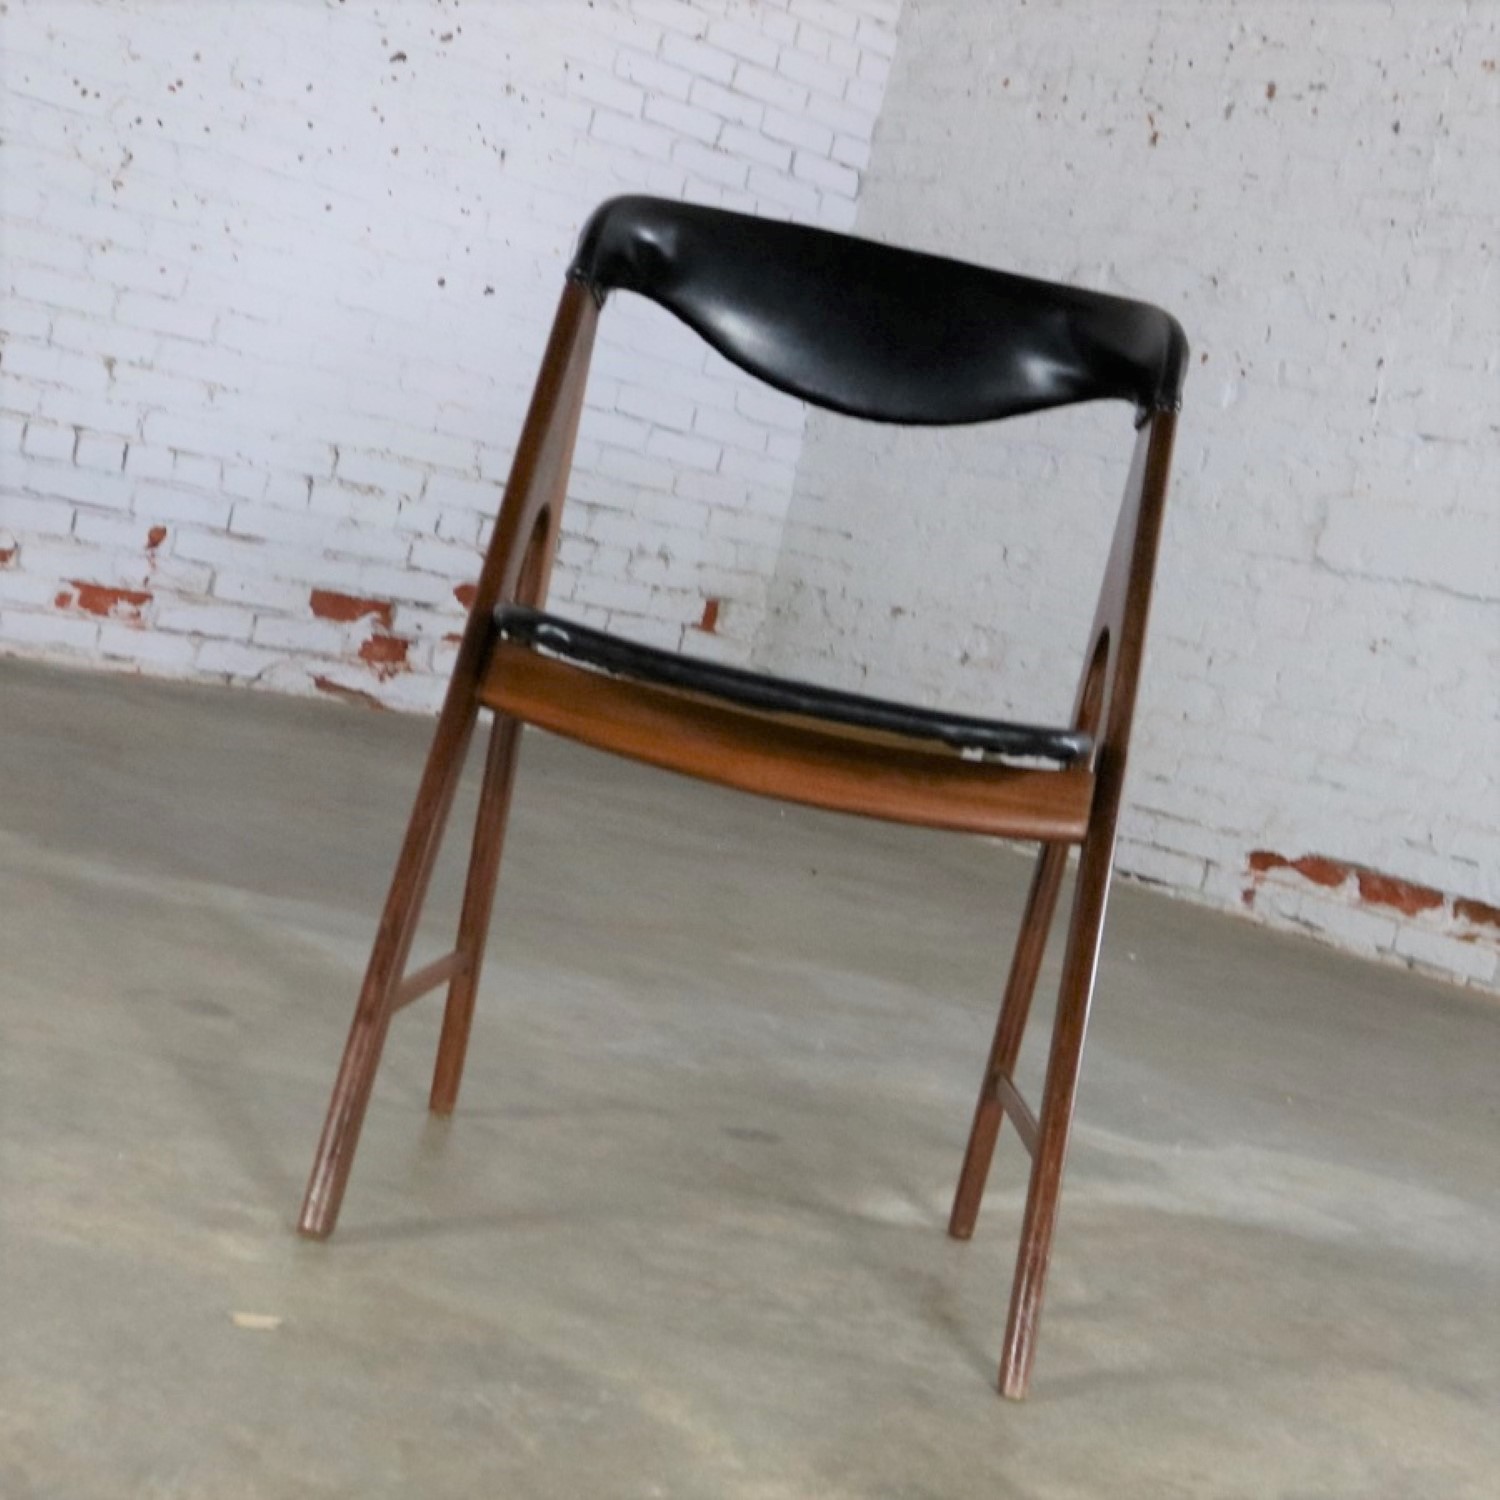 Small A Frame Scandinavian Modern Side Chair Manner of Kai Kristiansen Compass Chair